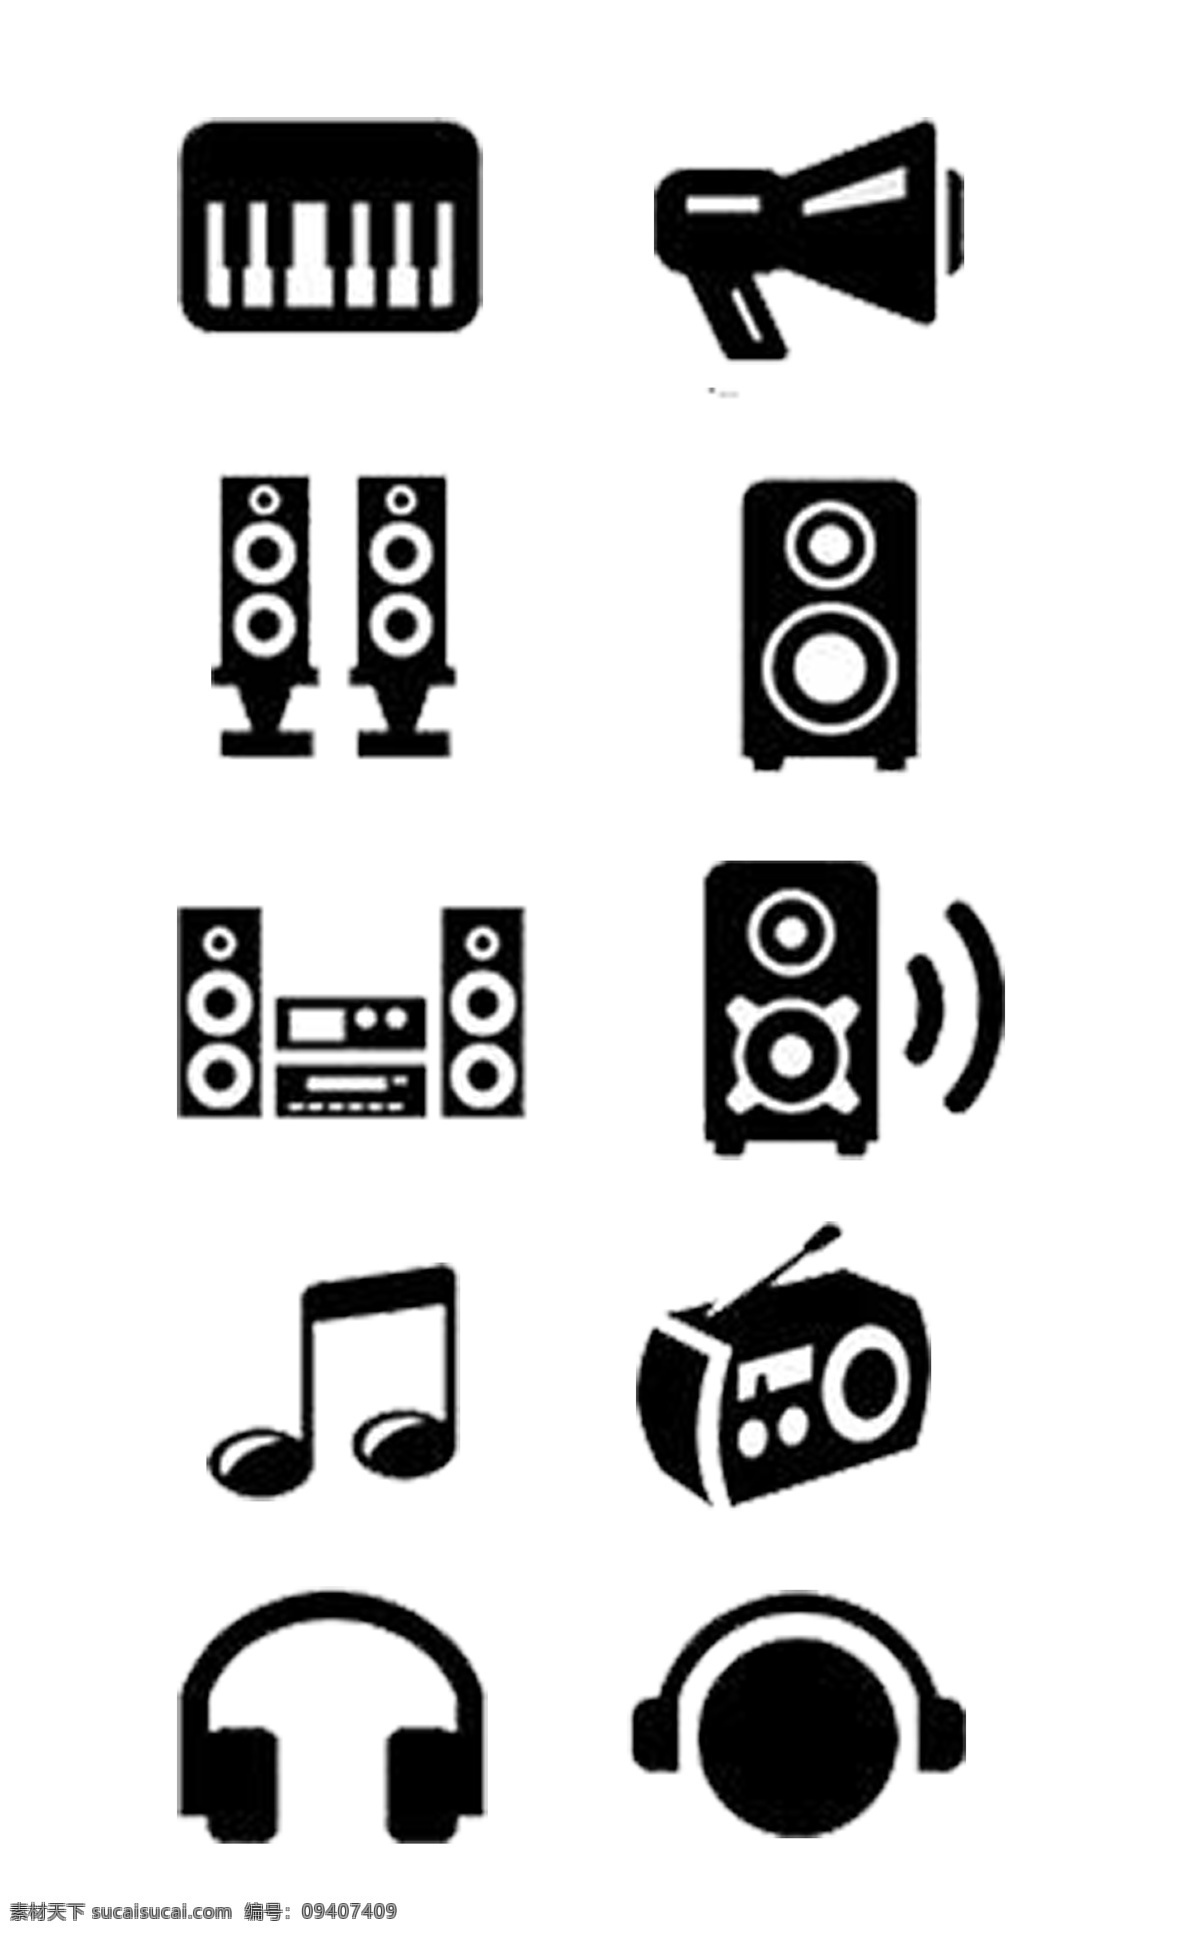 音乐 播放器 图标素材 图标 钢琴 喇叭 印象 单音响 组合音响 话筒 可分开使用 简单 免抠 png格式